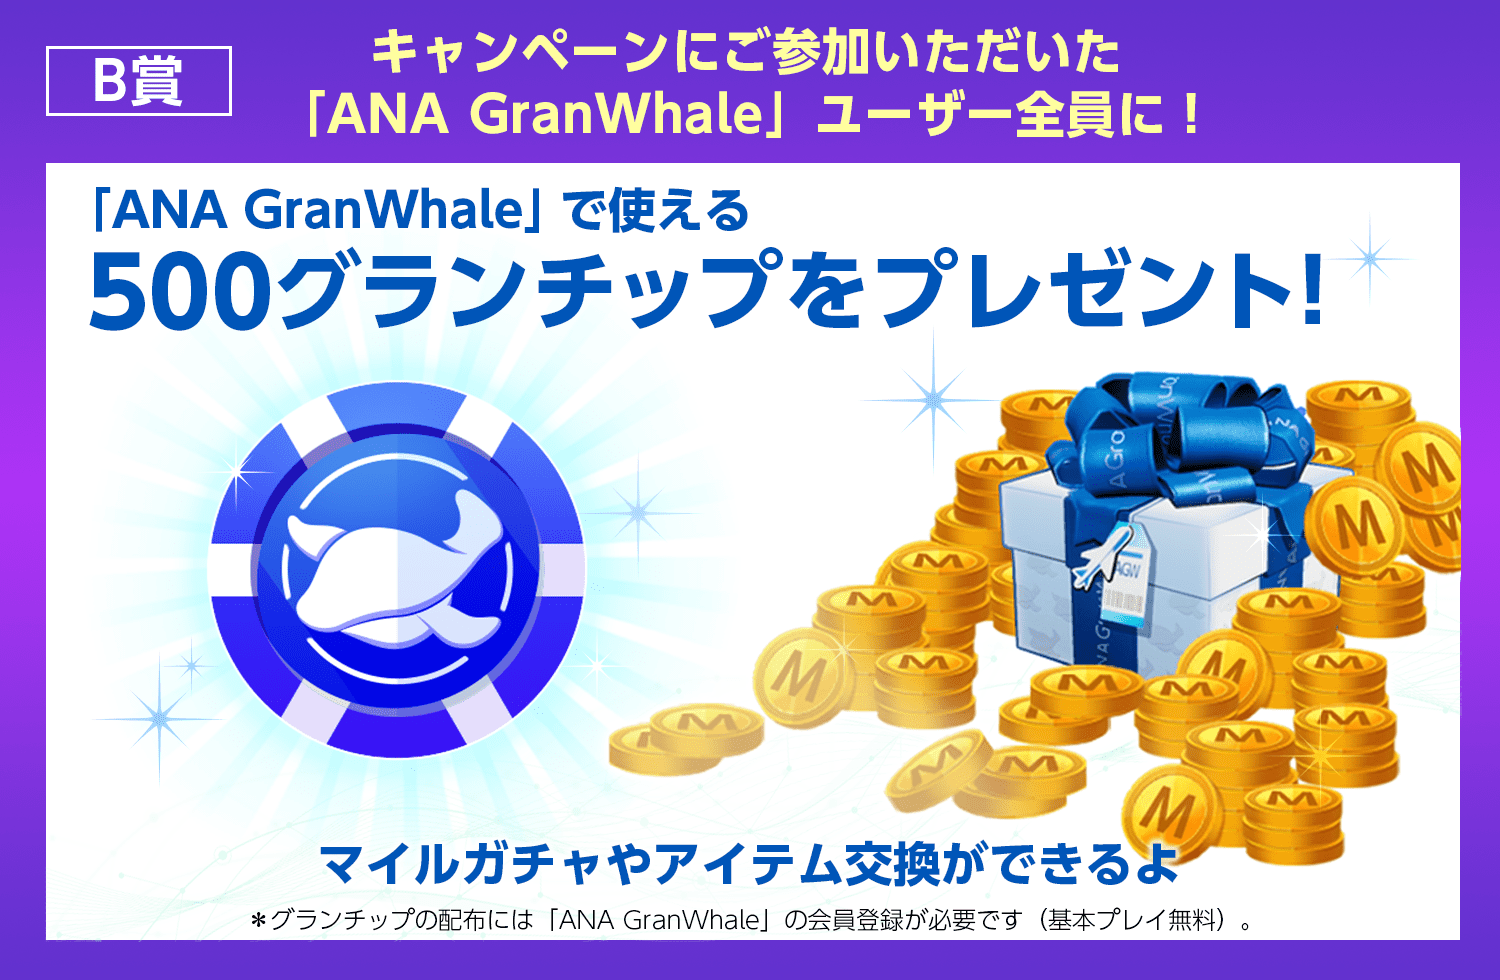 B賞 キャンペーンにご参加いただいた「ANA GranWhale」ユーザー全員に！「ANA GranWhale」で使える500グランチップをプレゼント。ANA公式バーチャル旅行アプリ「ANA GranWhale」の会員登録が必要です